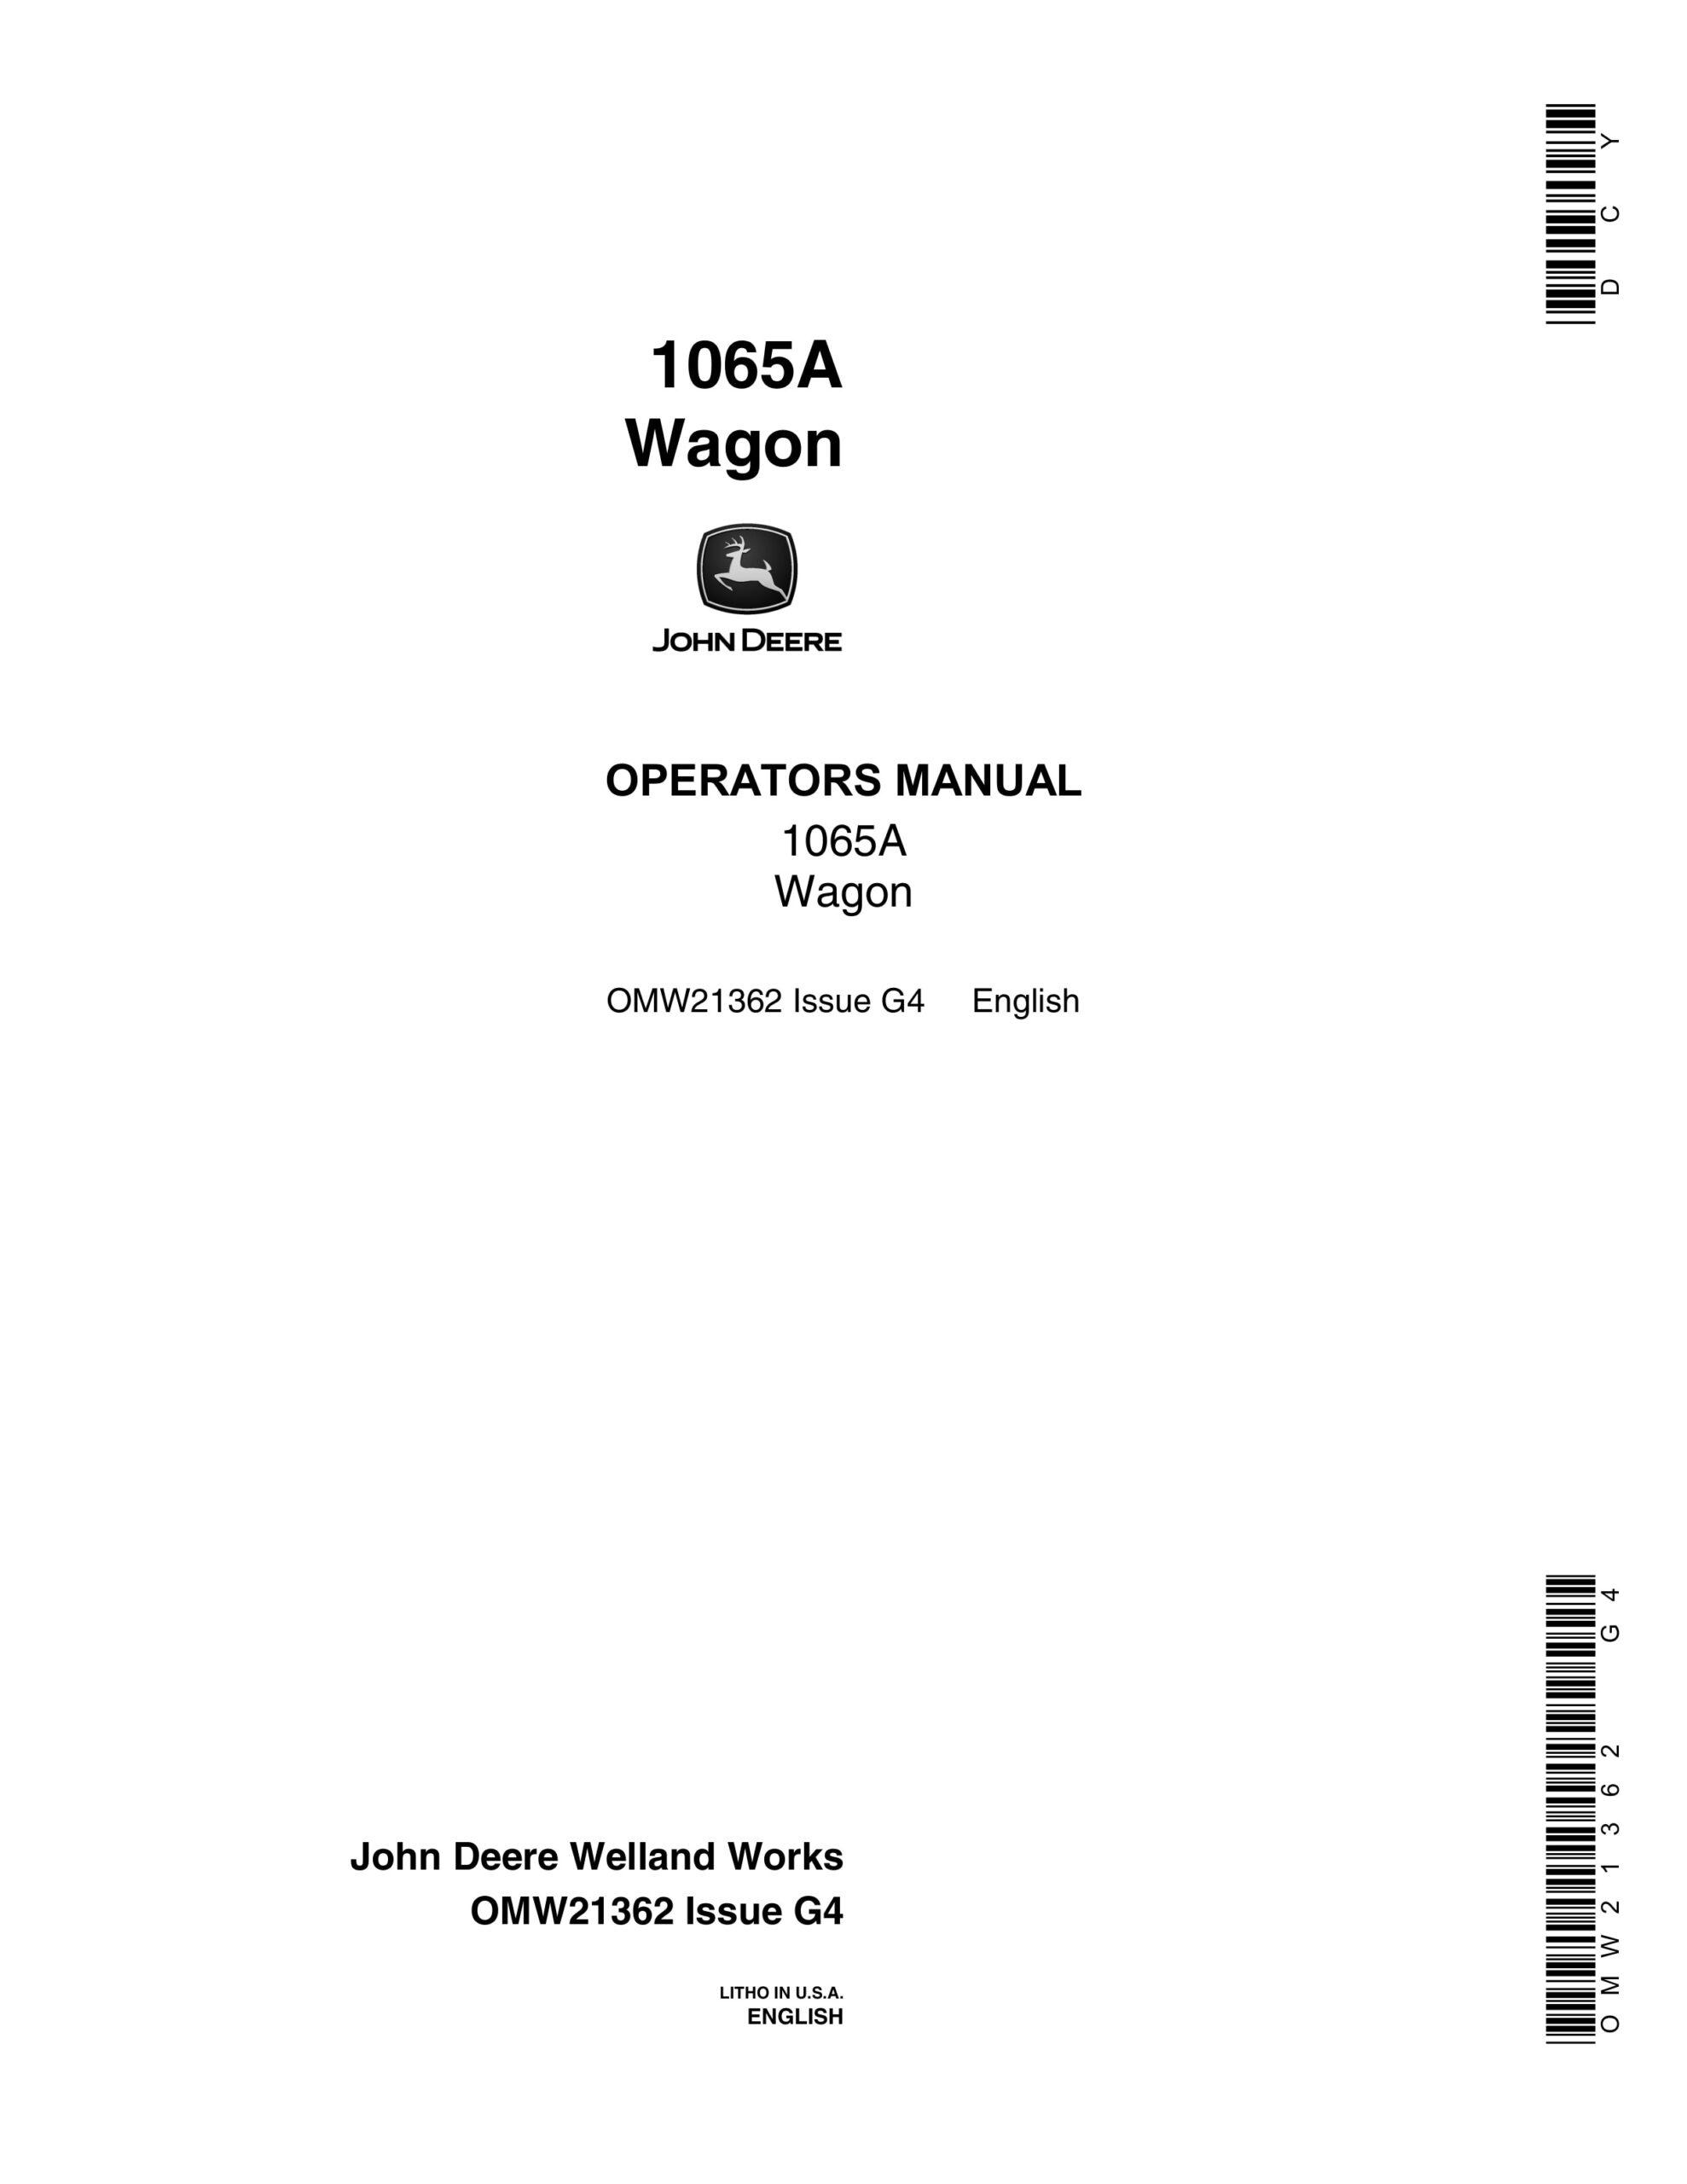 John Deere 1065A Wagon Operator Manual OMW21362-1